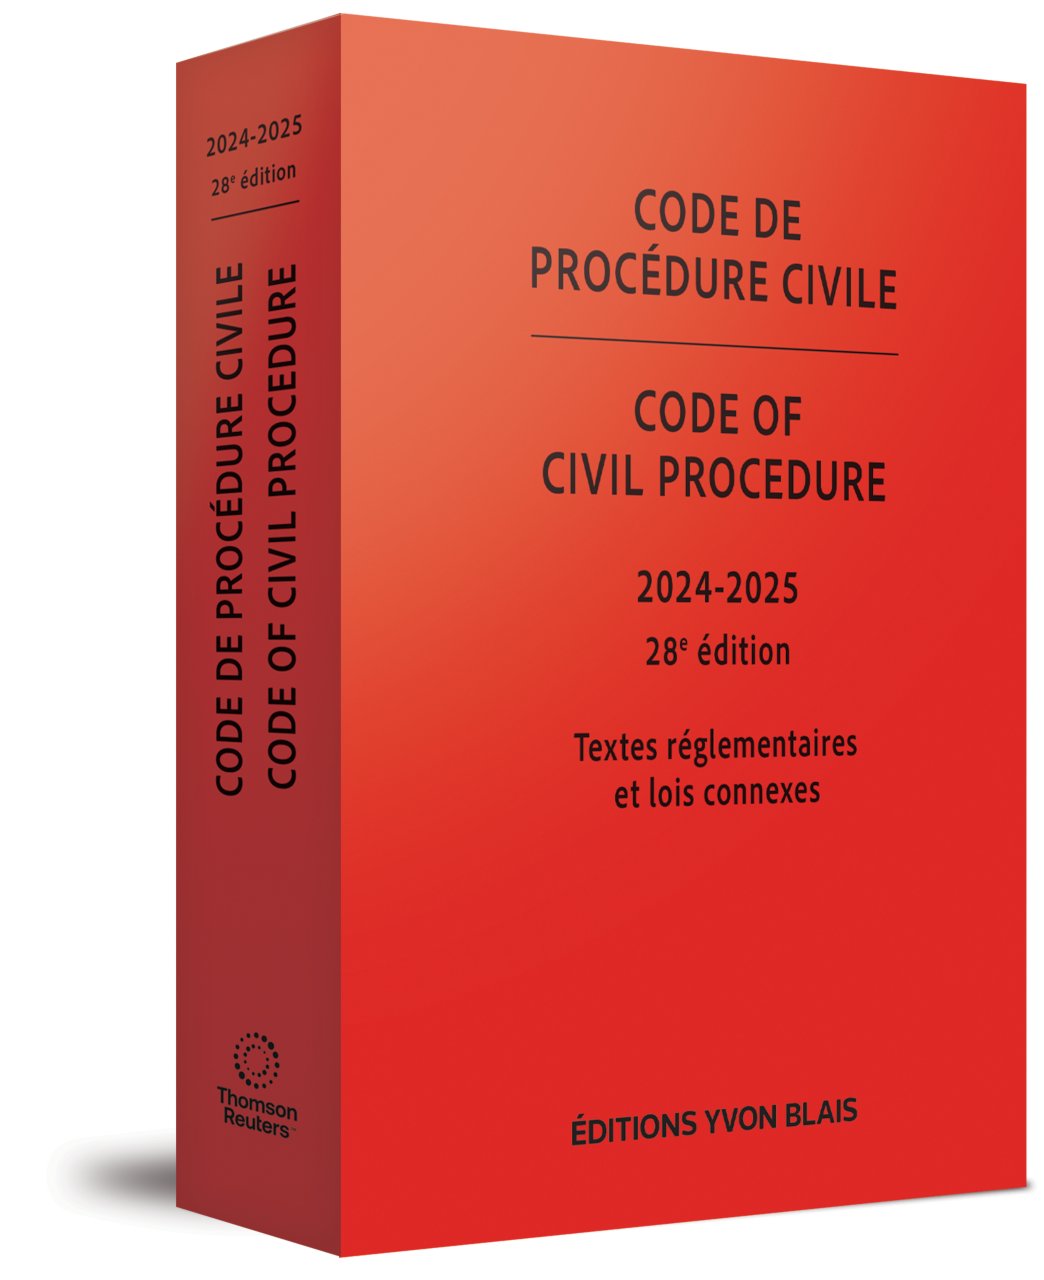 Code de procédure civile 2024-2025 / Code of Civil Procedure 2024-2025, 28e édition